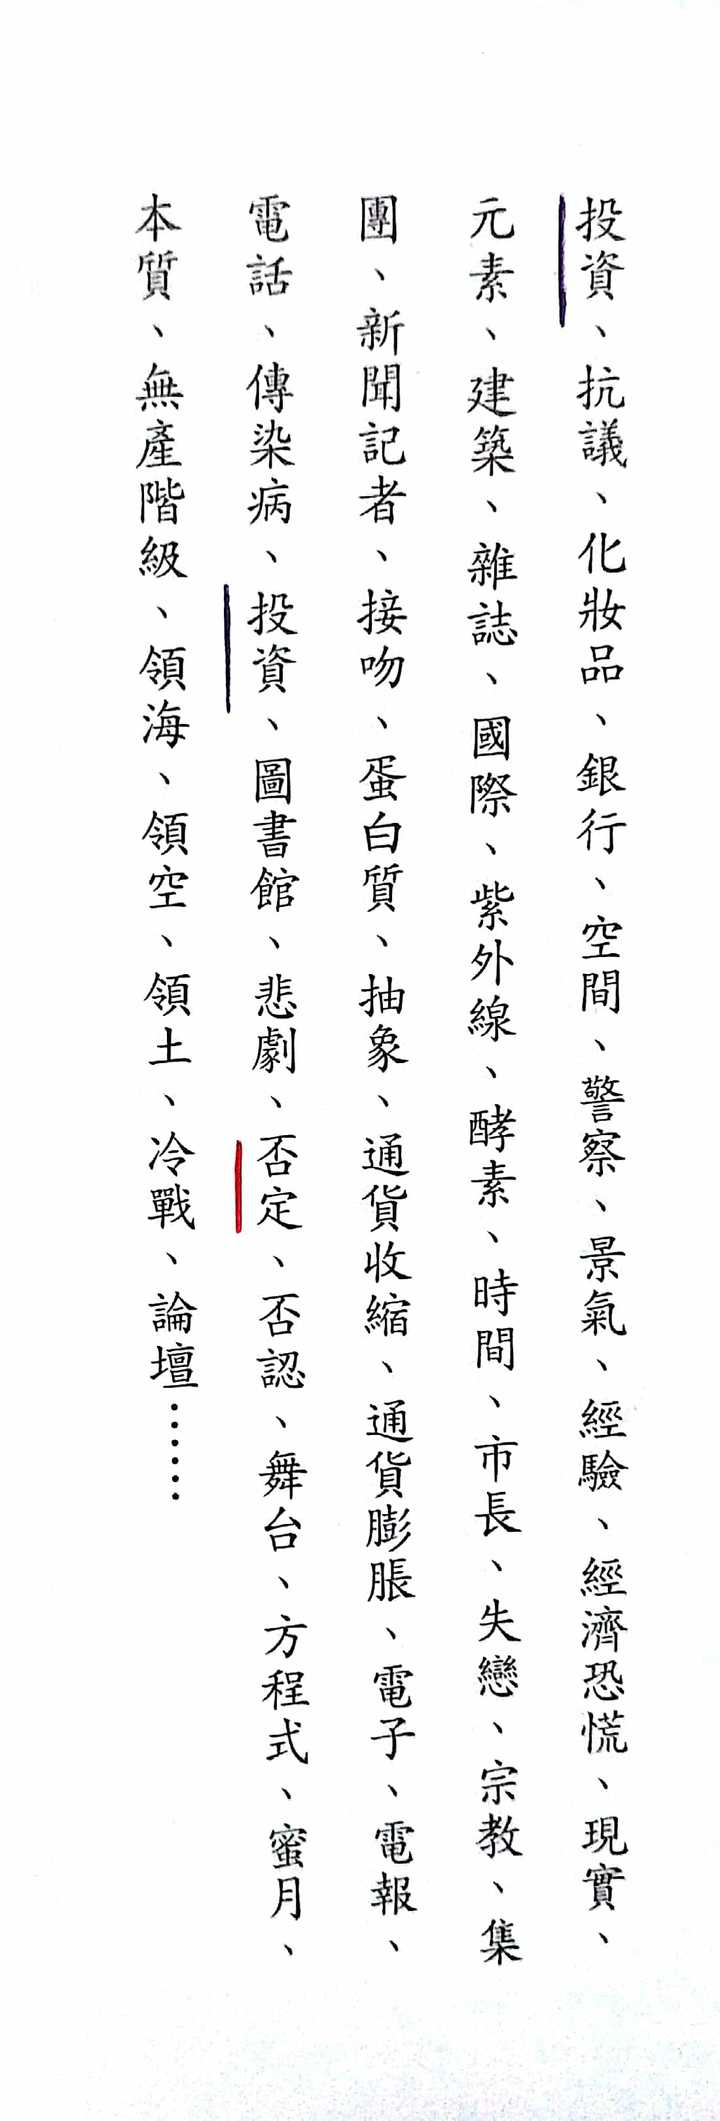 哪些中文词汇来自日语 知乎